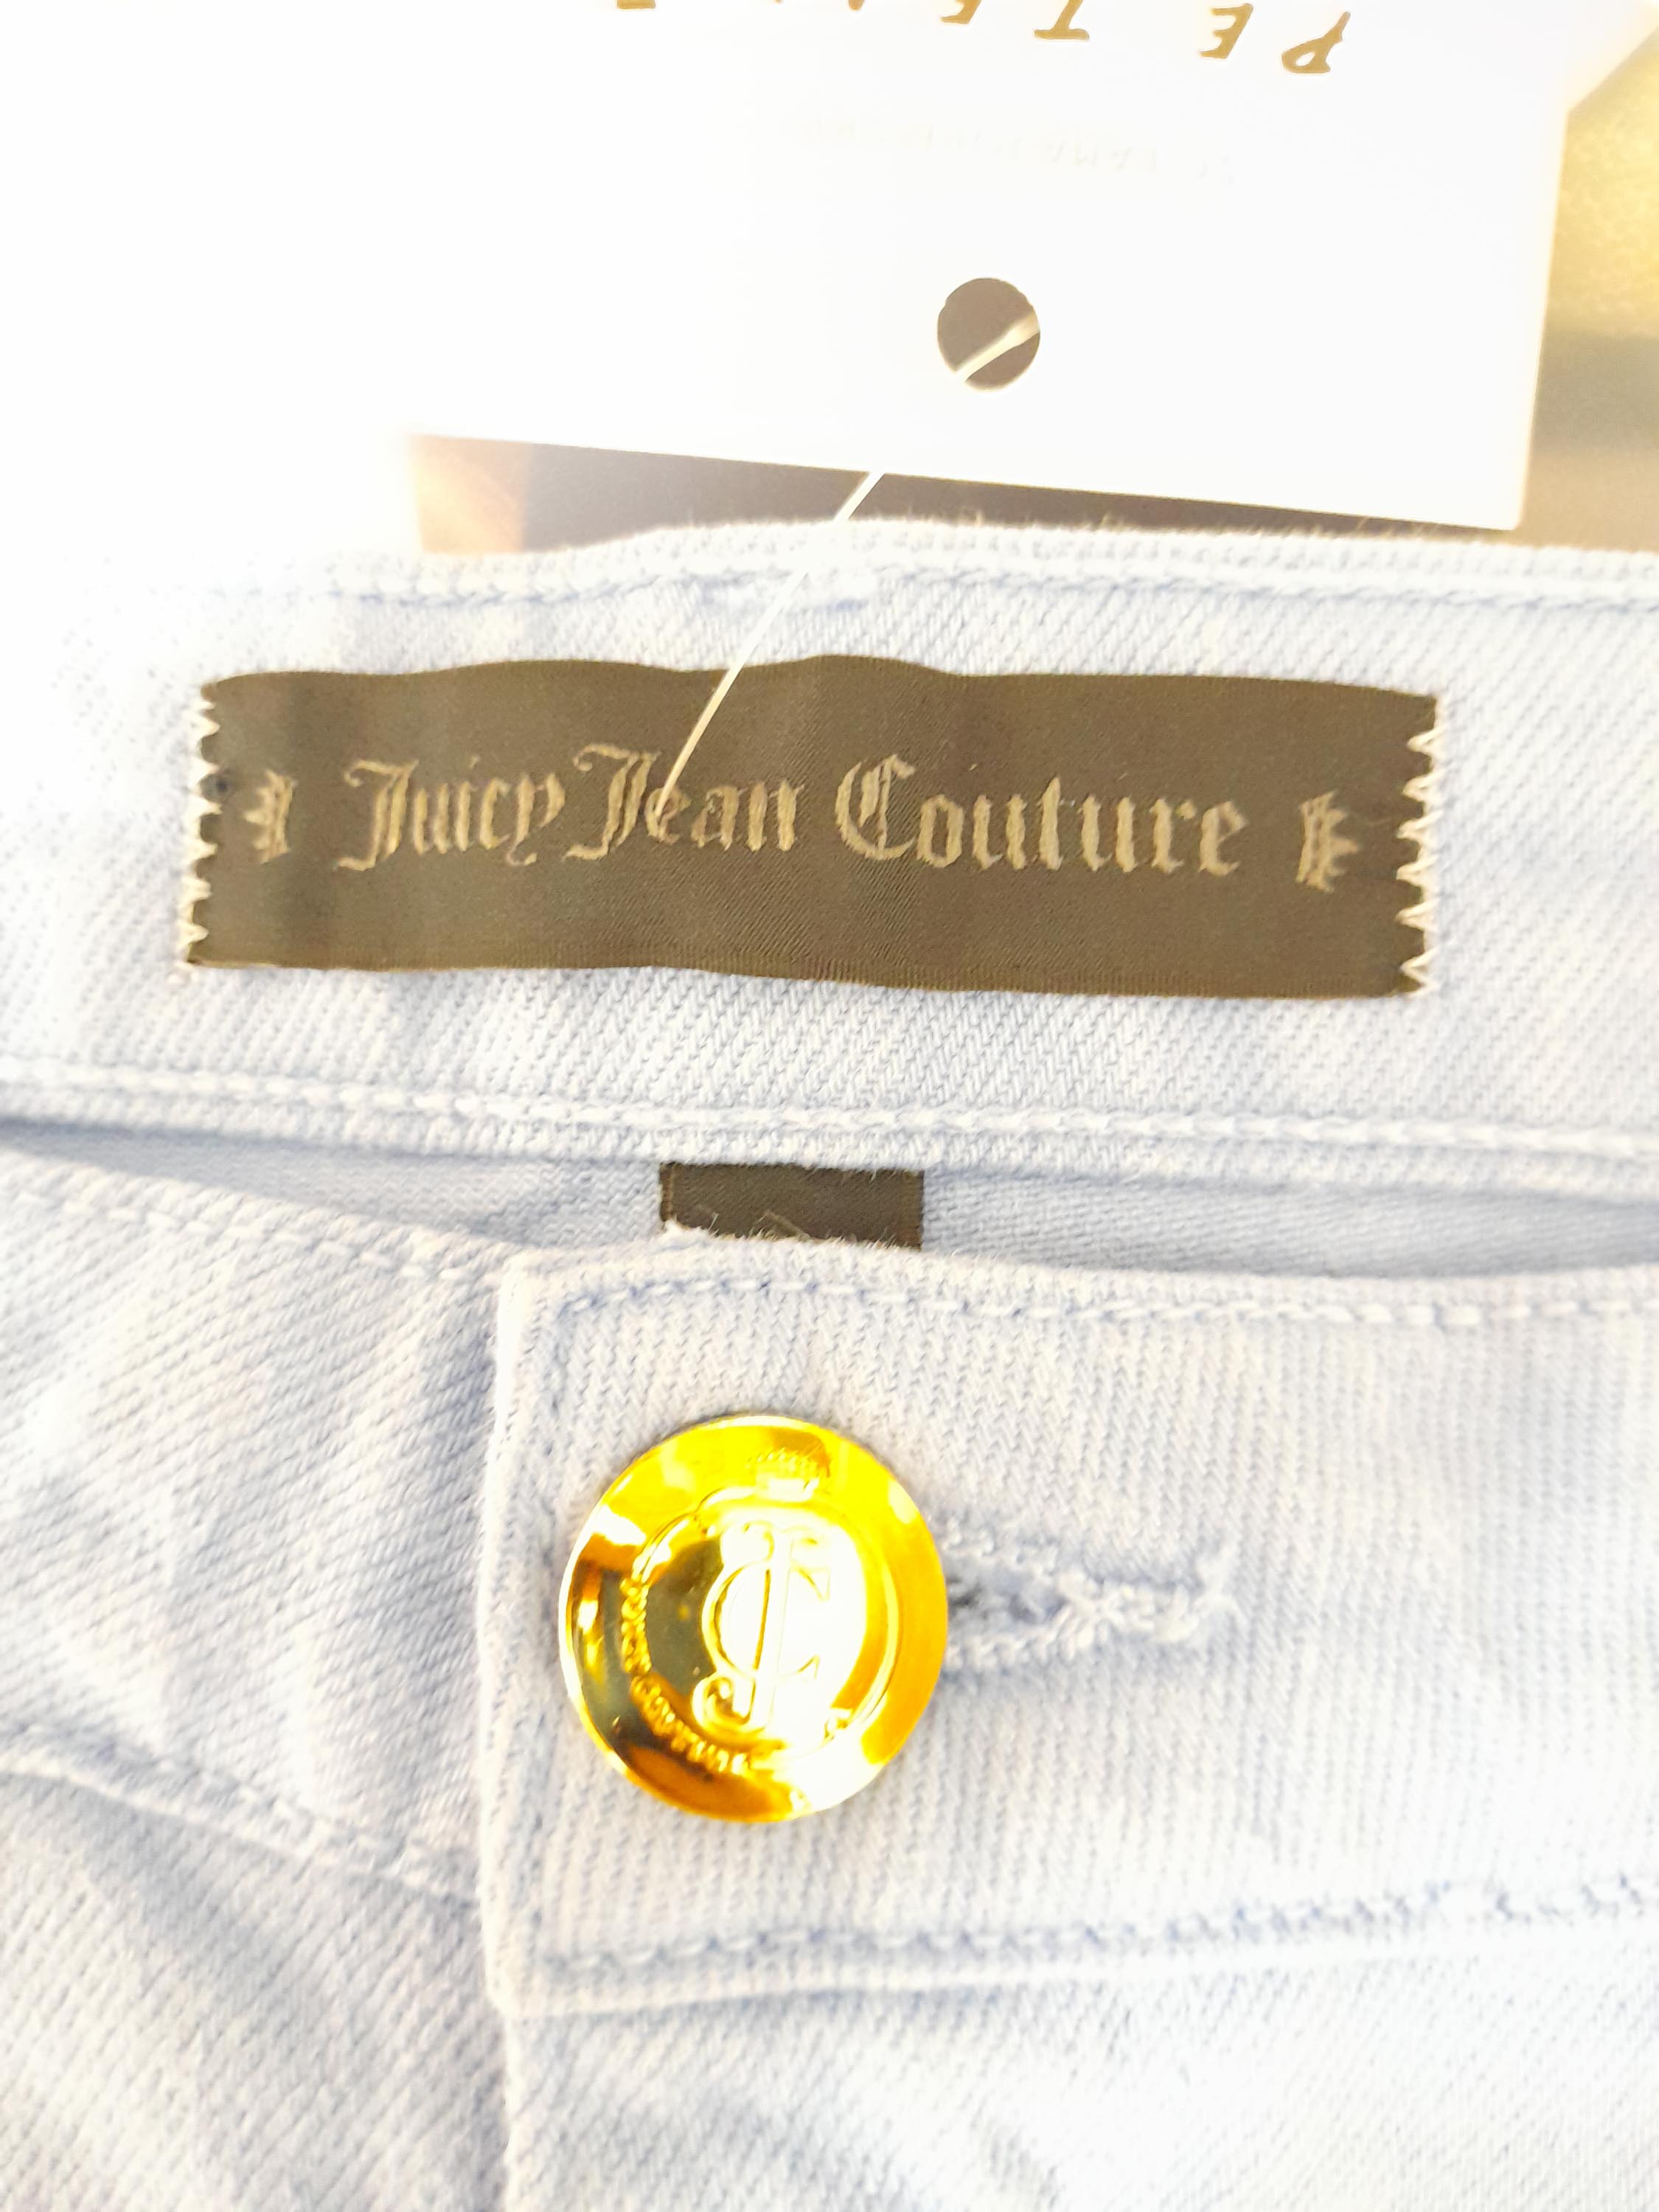 Pantaloni Scurti Juicy Team Couture Femei - M